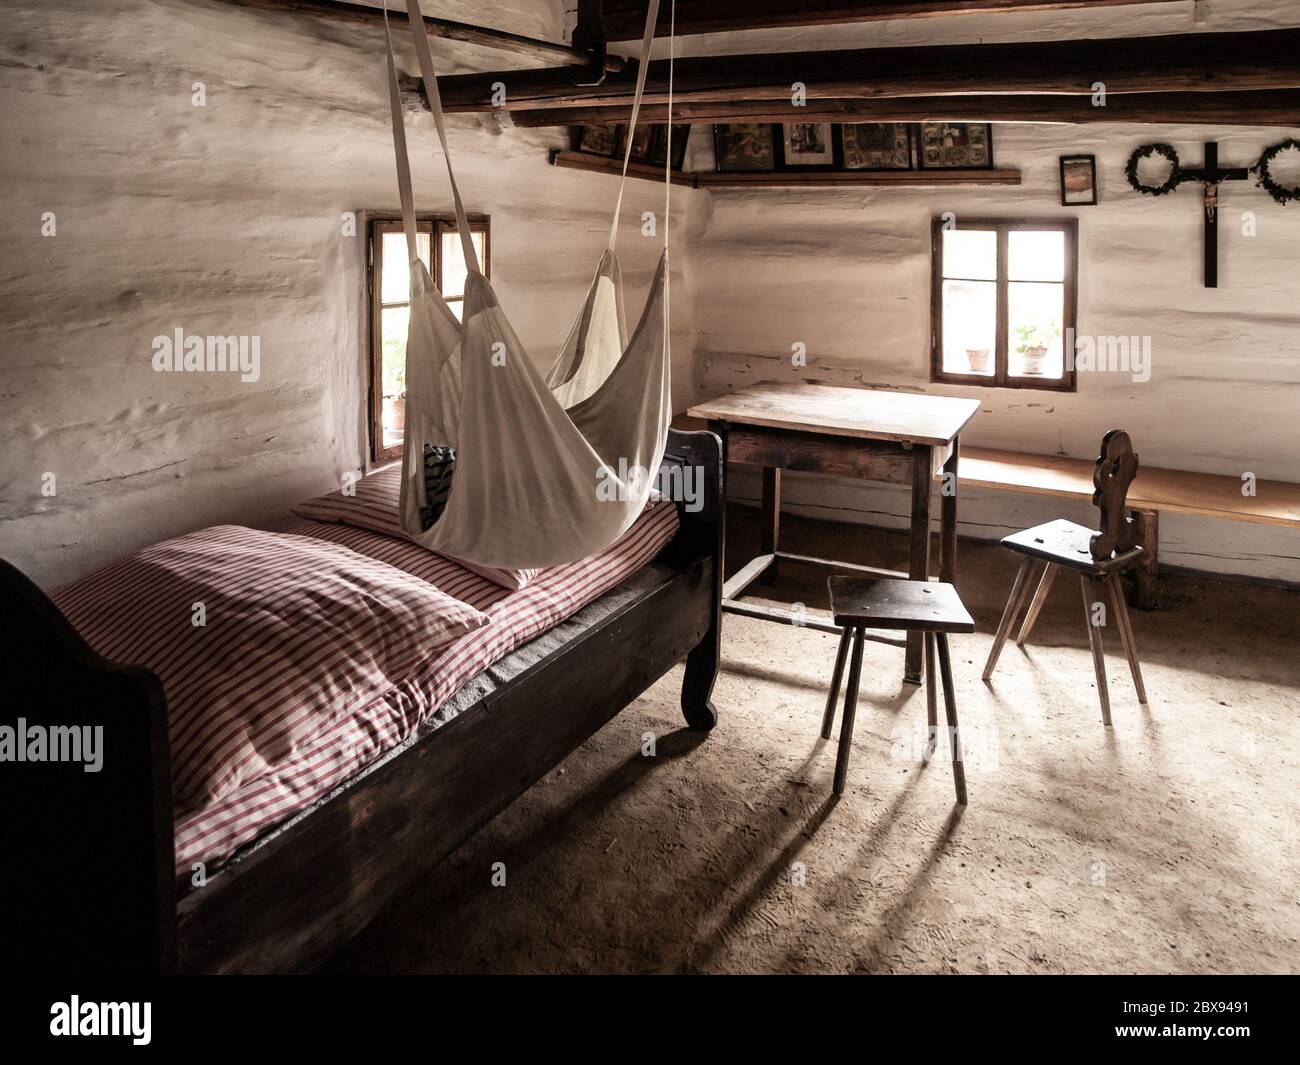 Chambre vintage avec lit, table et chaises dans la maison rurale ancienne. Image de style sépia. Banque D'Images